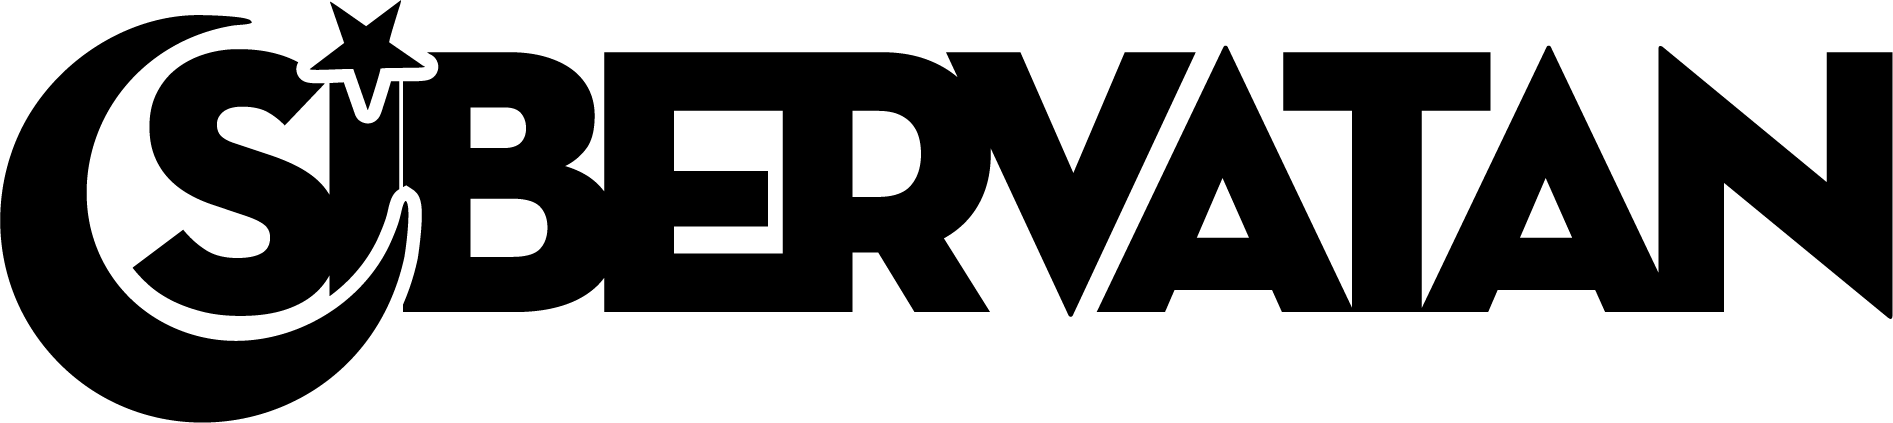 SiberVatan logo